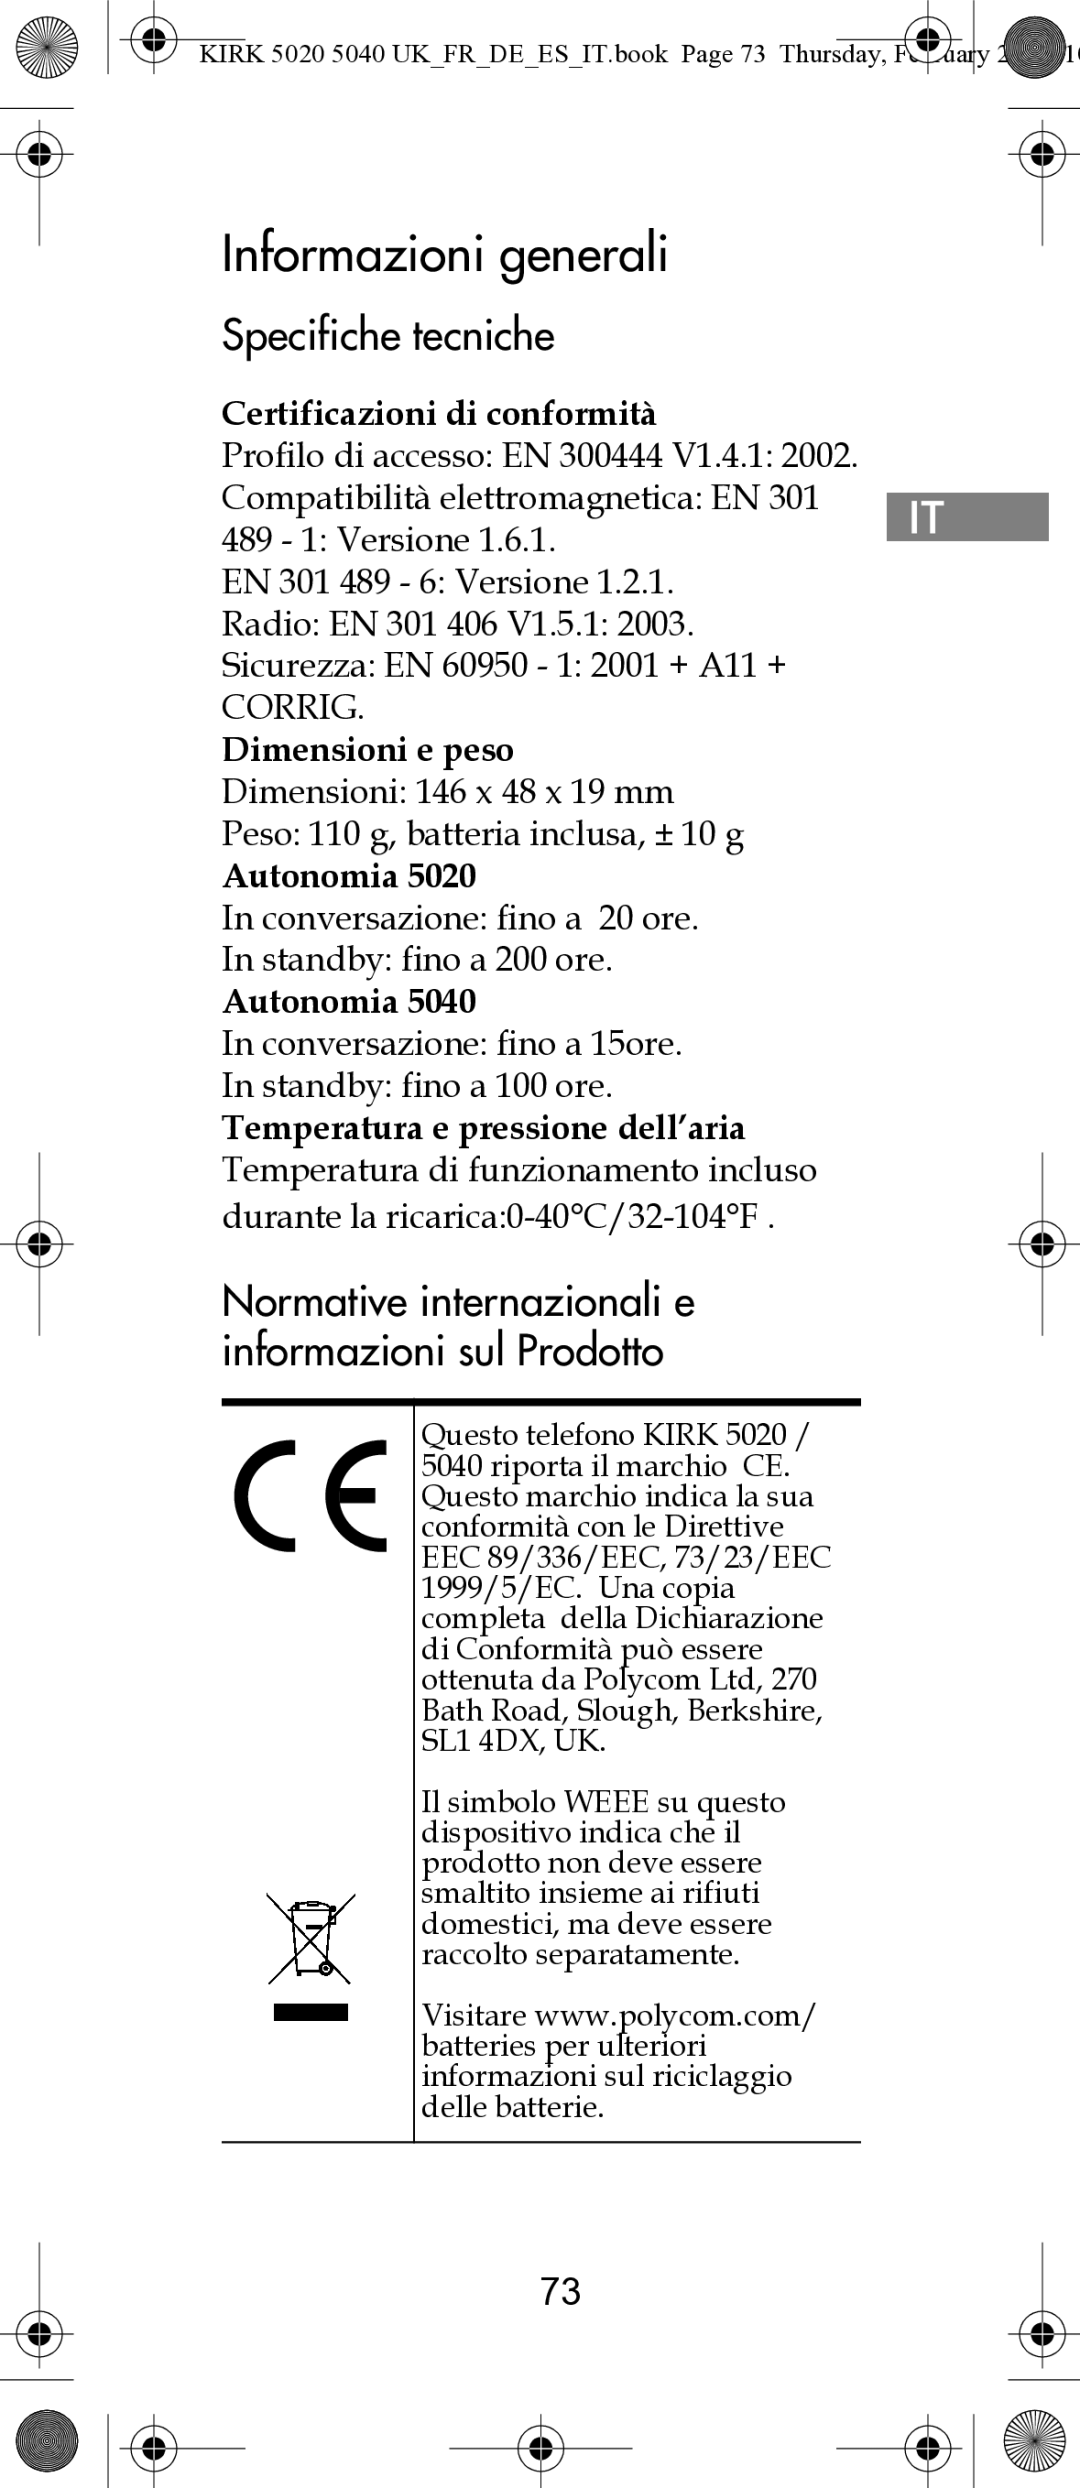 Polycom 14171914-HD manual Informazioni generali, Specifiche tecniche, Normative internazionali e informazioni sul Prodotto 